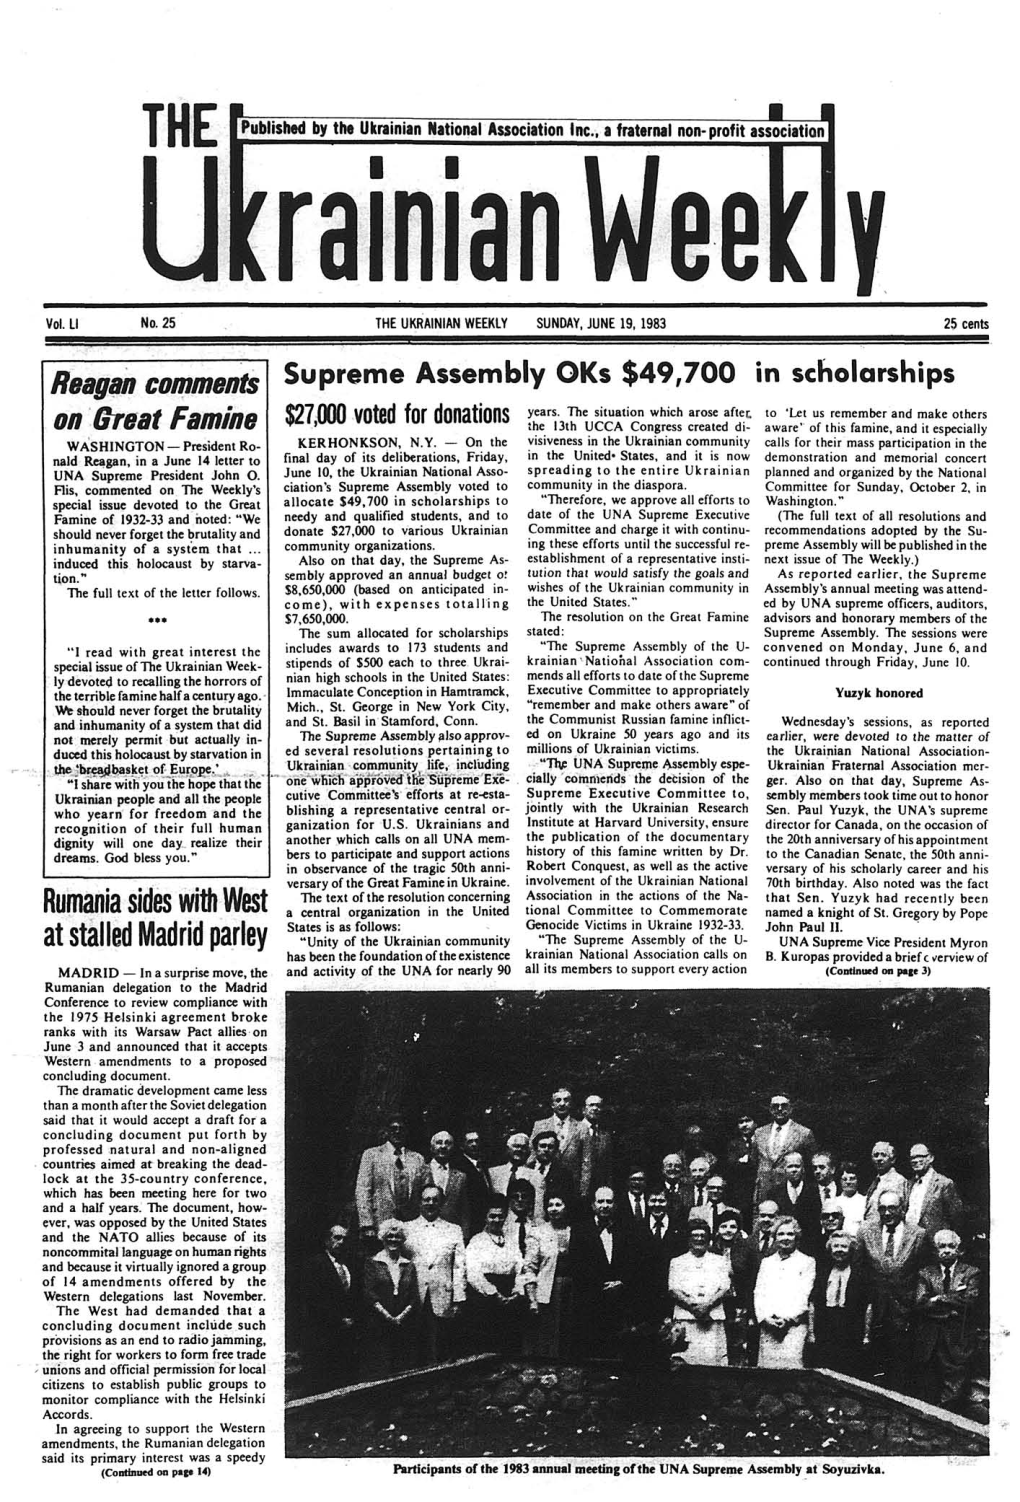 The Ukrainian Weekly 1983